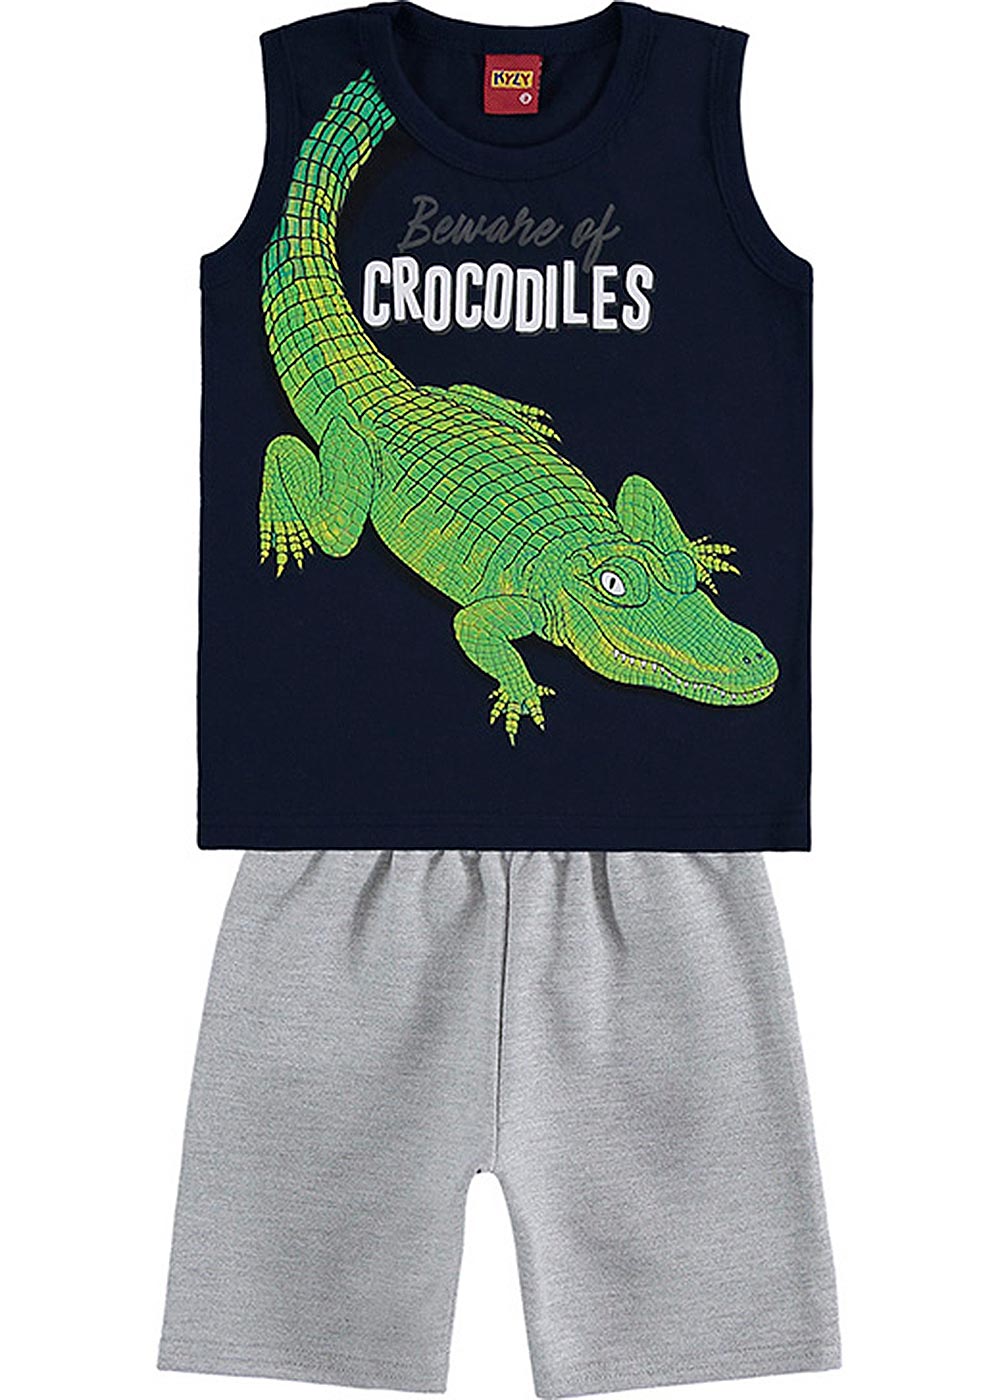 Conjunto Infantil Masculino Verão Marinho Crocodiles - Kyly